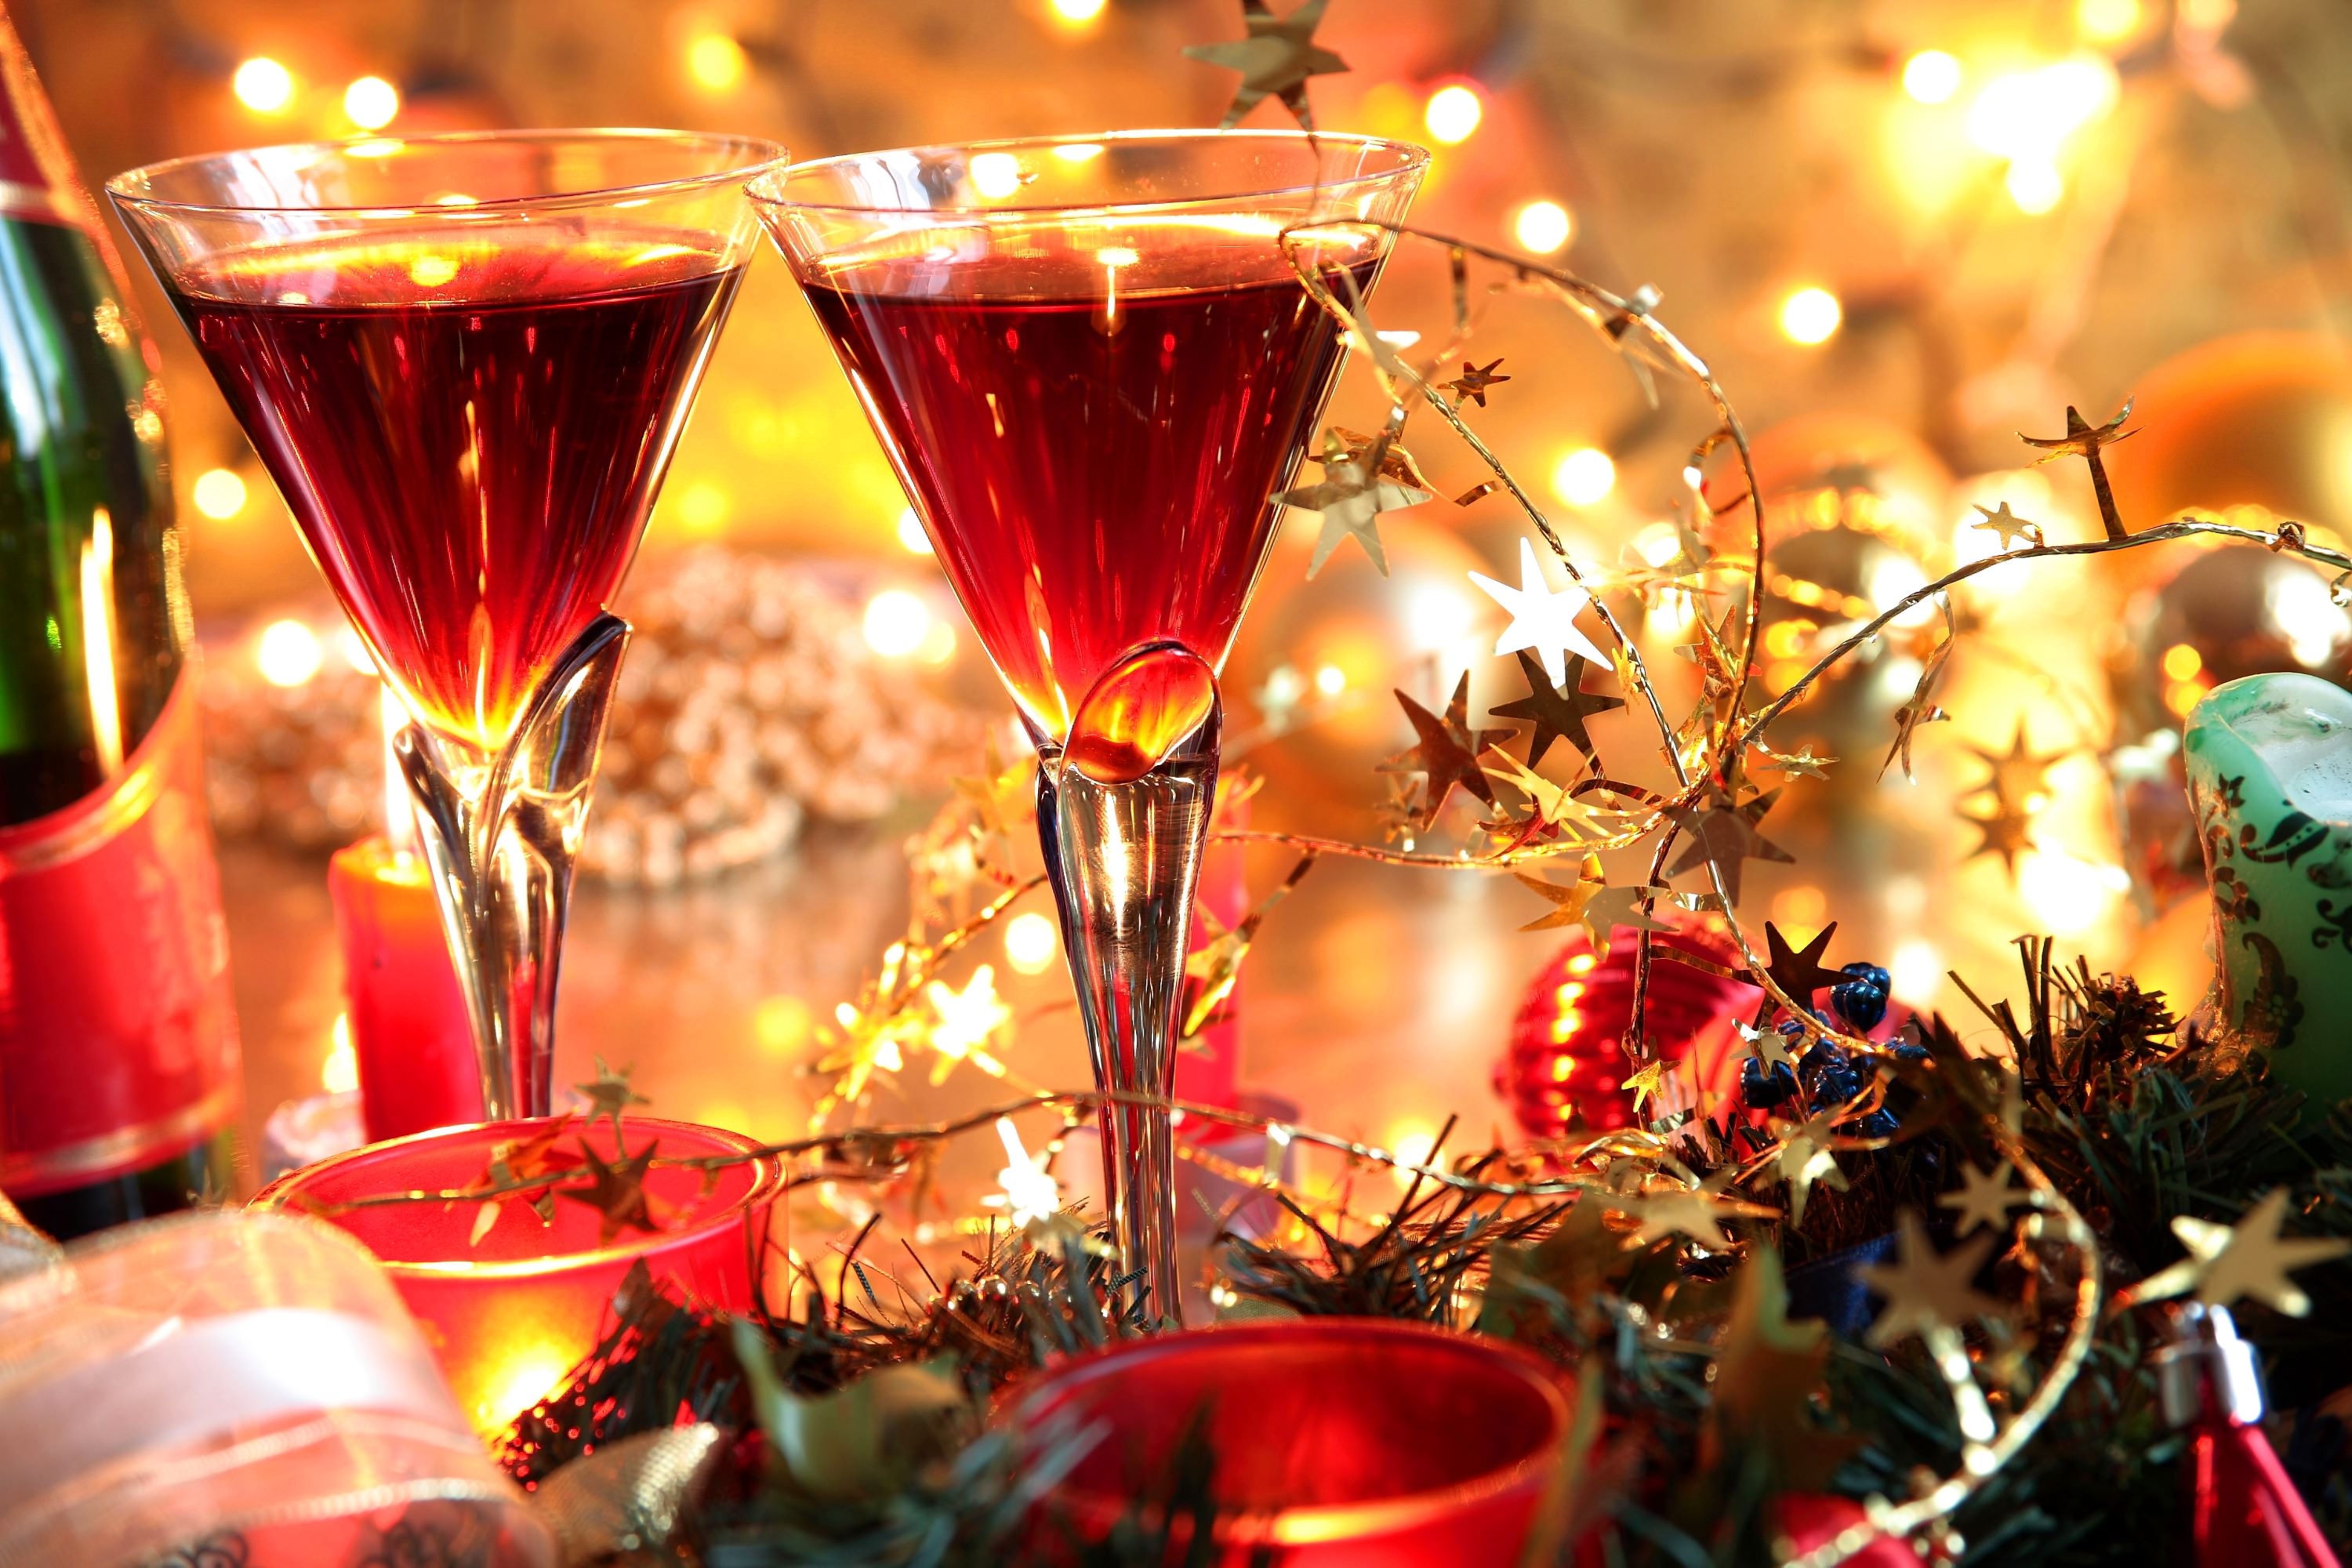 fond d'écran de fête de noël,boisson,boisson alcoolisée,verres à pied champagne,noël,décoration de noël